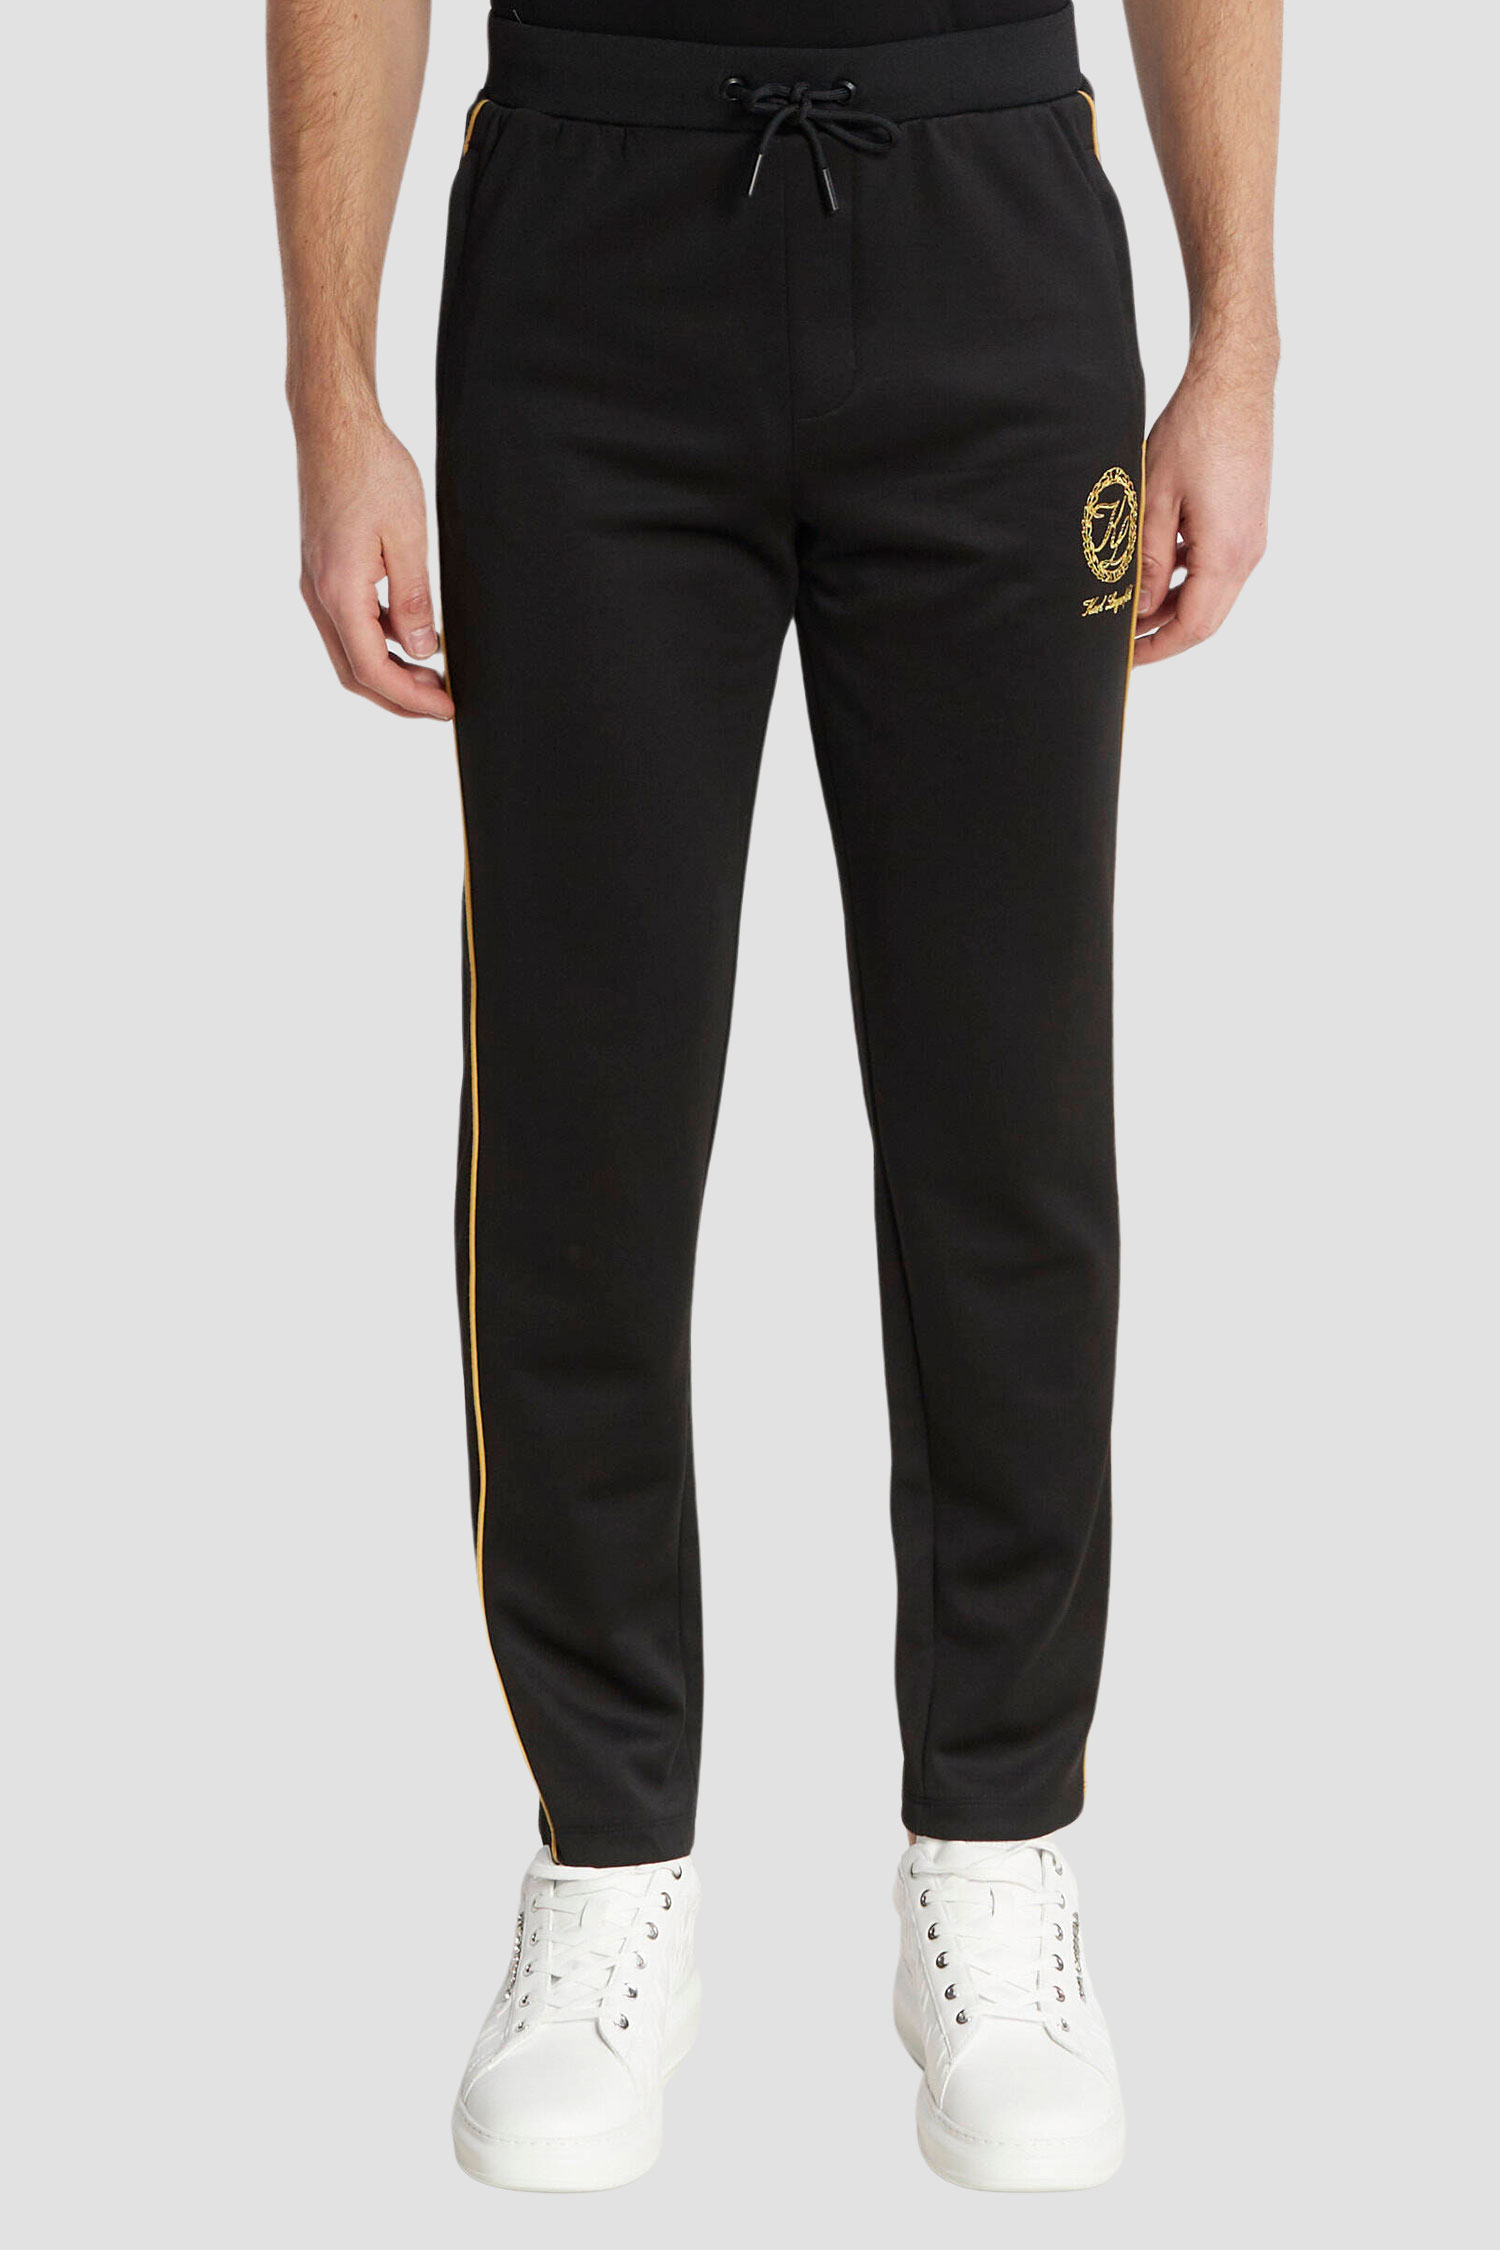 Мужские черные спортивные брюки Karl Lagerfeld 534905.705433;160